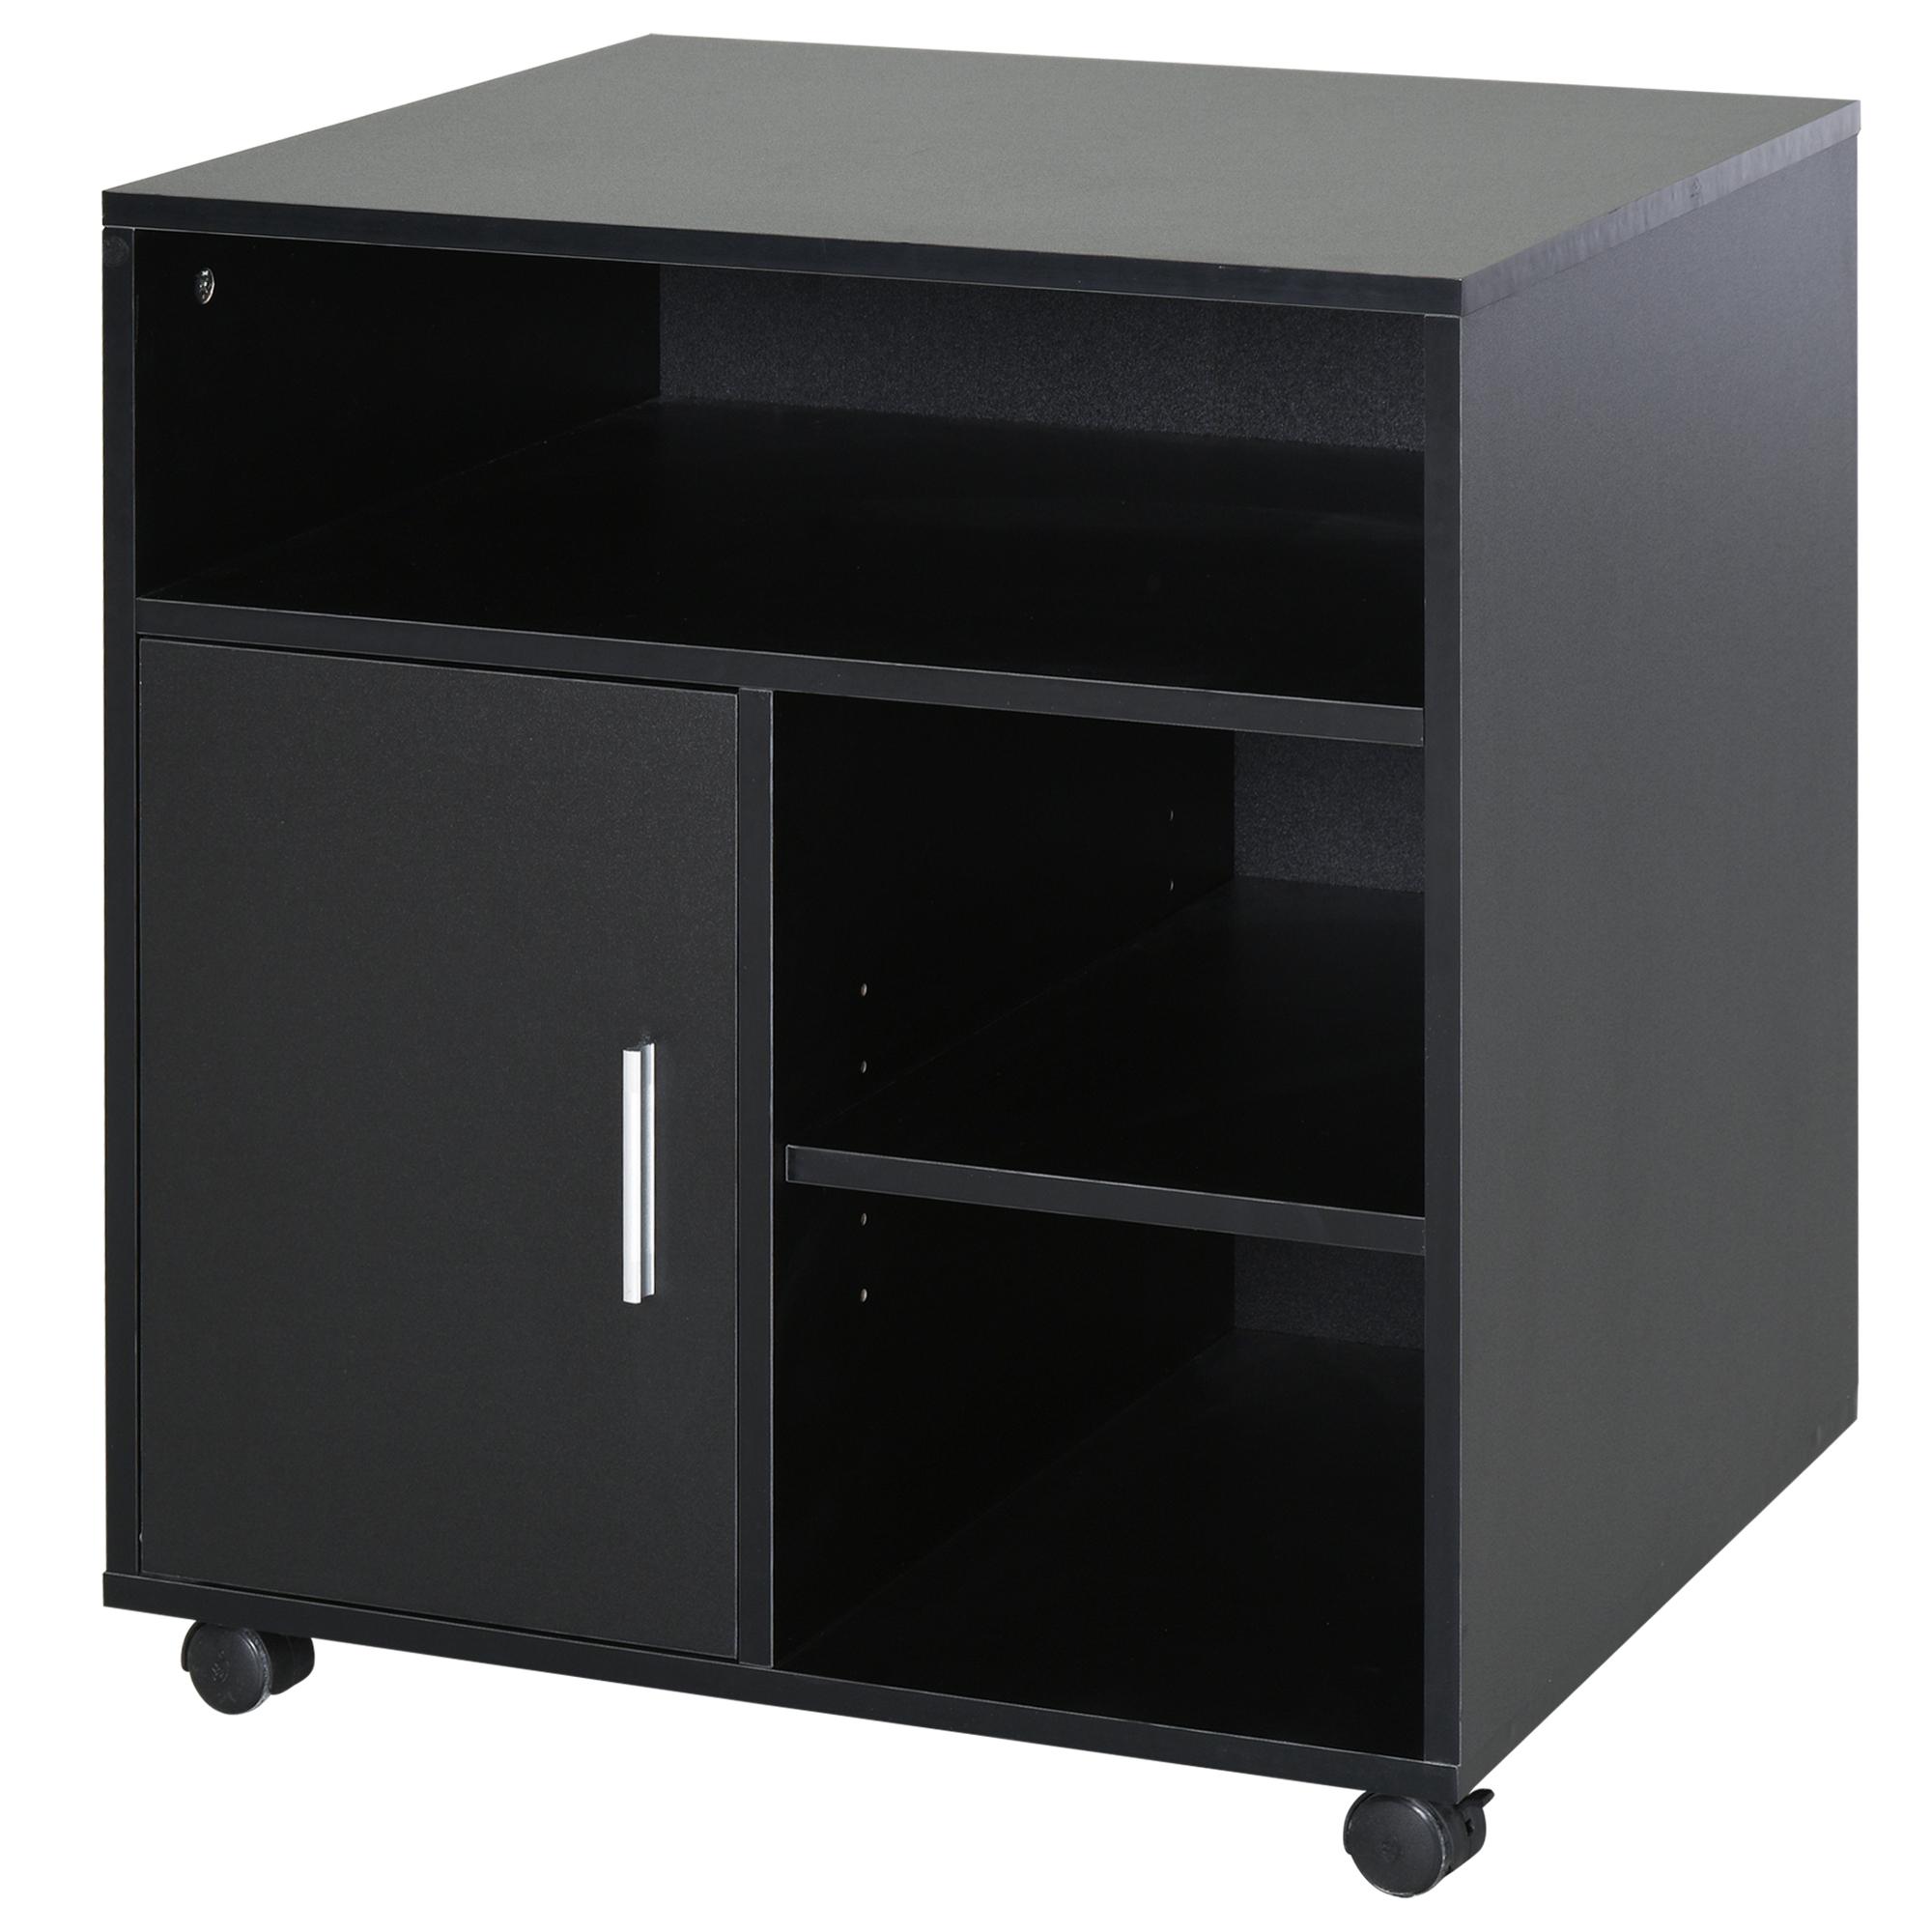 HOMCOM Support d'imprimante organiseur bureau caisson placard porte 3 niches + grand plateau panneaux particules noir